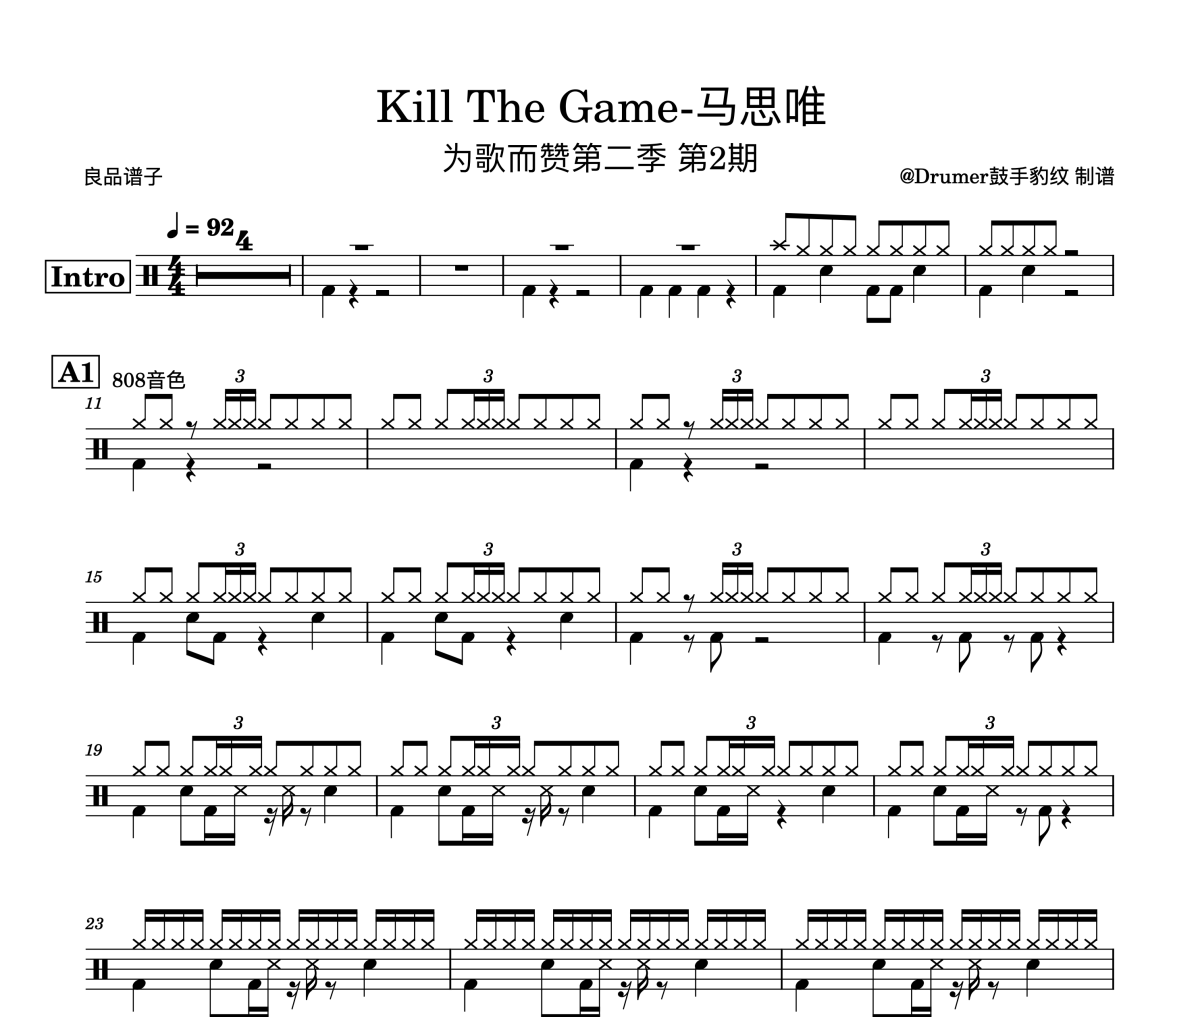 马思唯-Kill The Game架子鼓谱爵士鼓谱 为歌而赞第二季